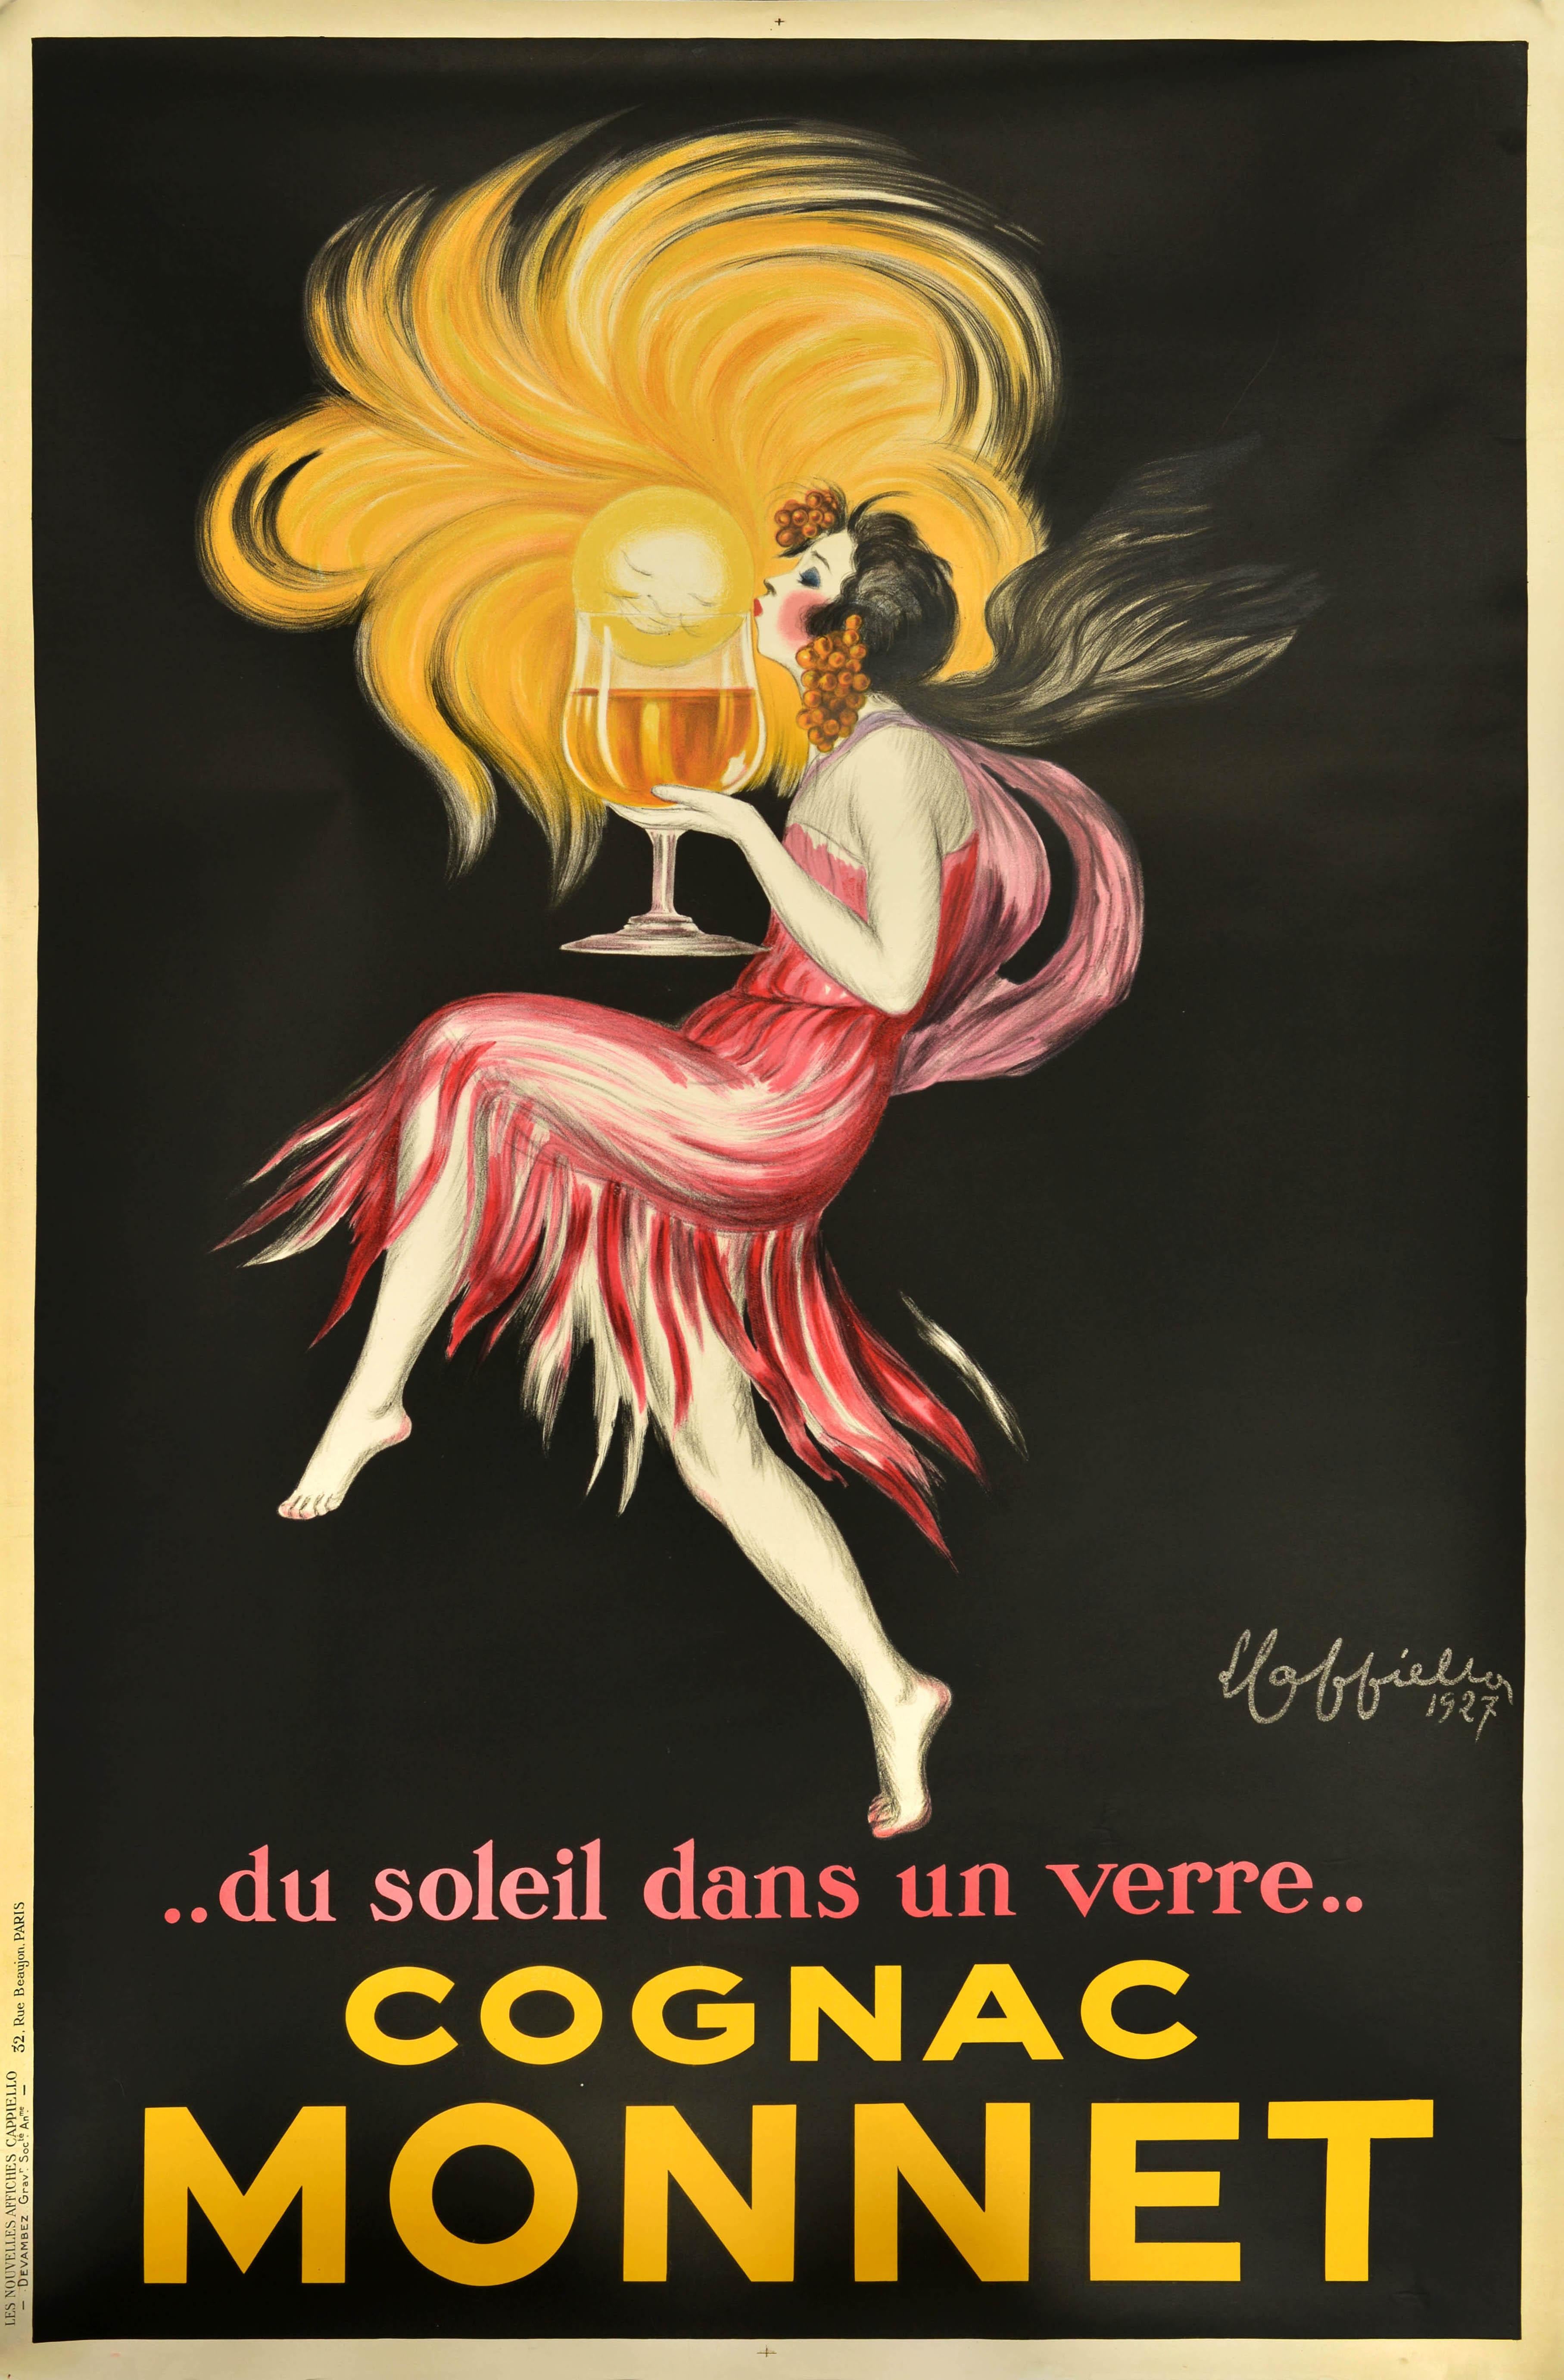 Affiche originale de boisson vintage pour le Cognac Monnet, avec un superbe dessin du célèbre affichiste Leonetto Cappiello (1875-1942) représentant une dame en robe rose avec des raisins dans ses cheveux flottants, embrassant un soleil souriant